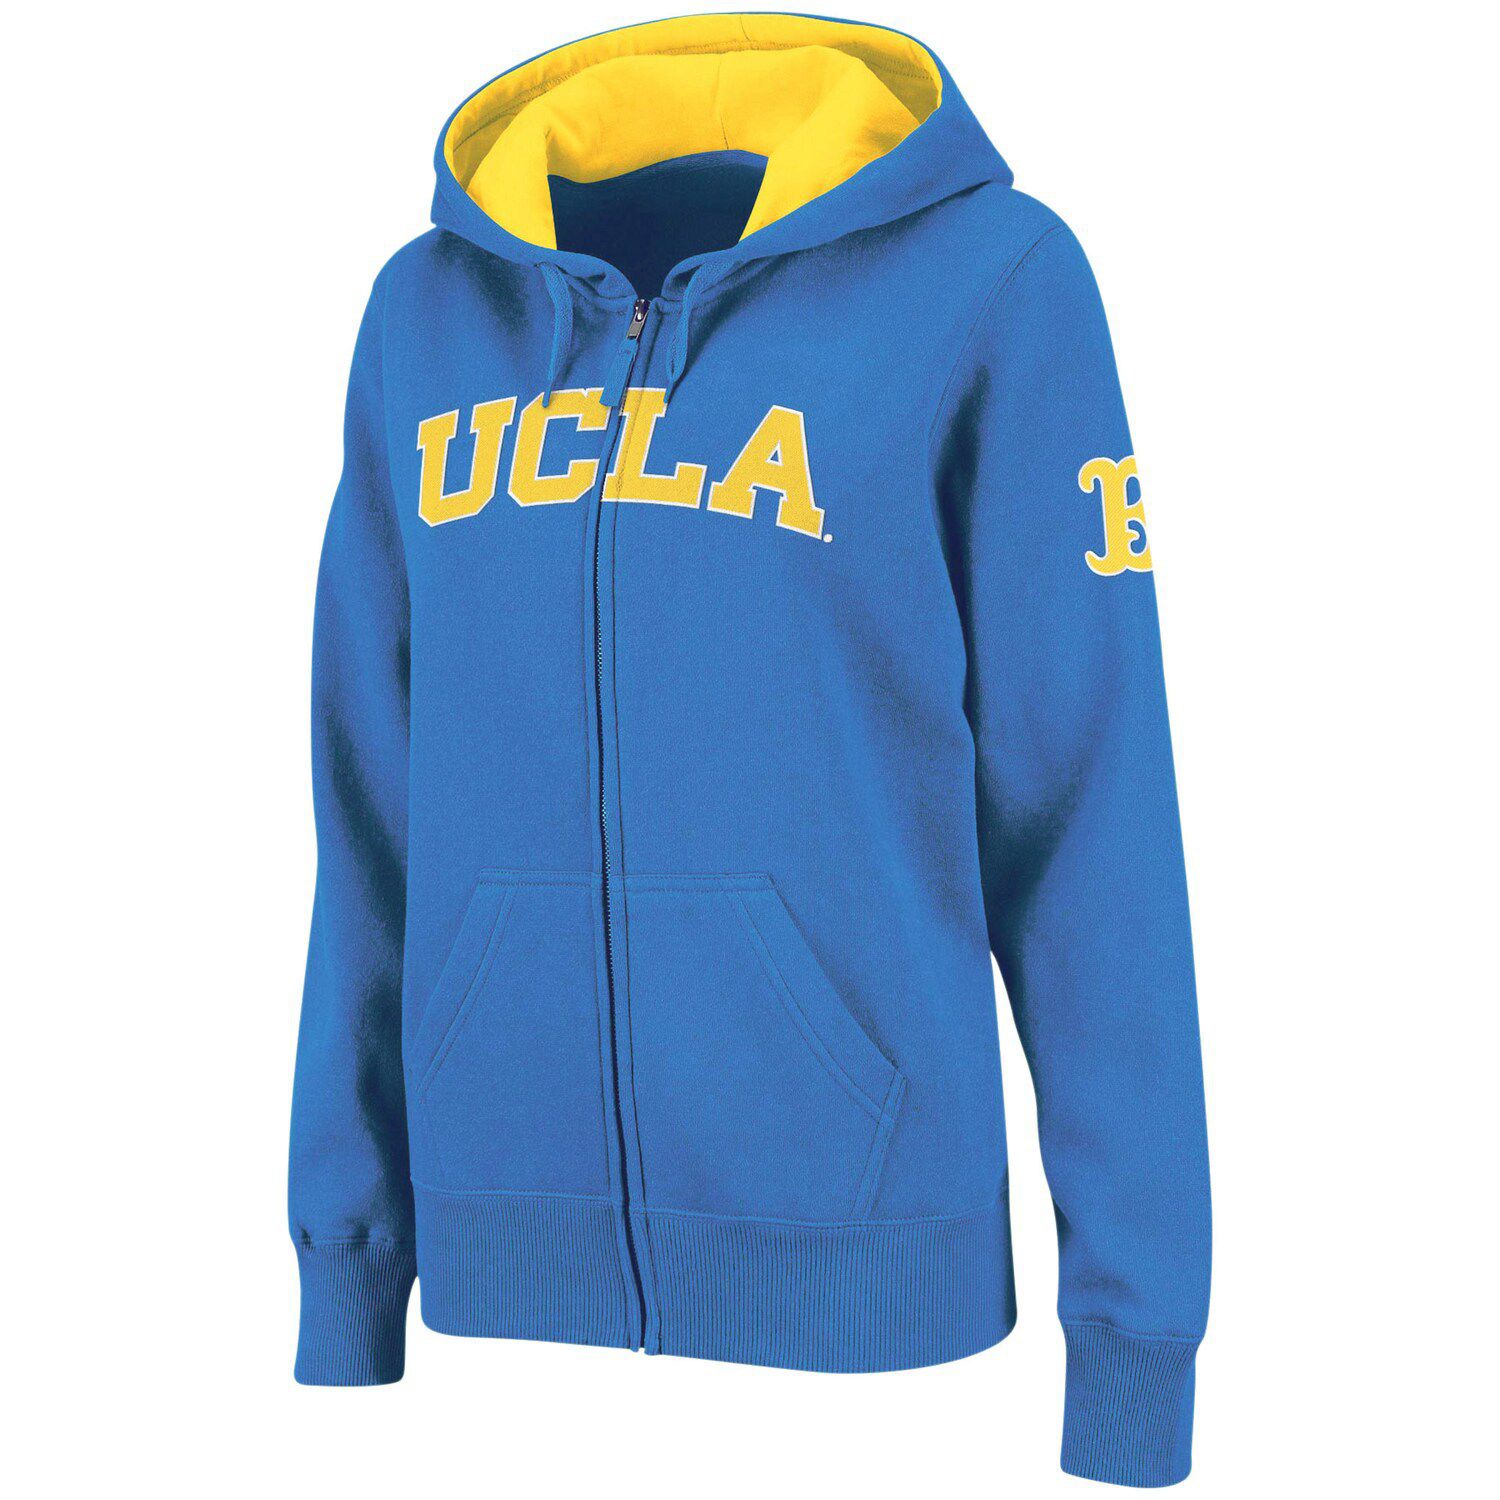 ucla zip up hoodie